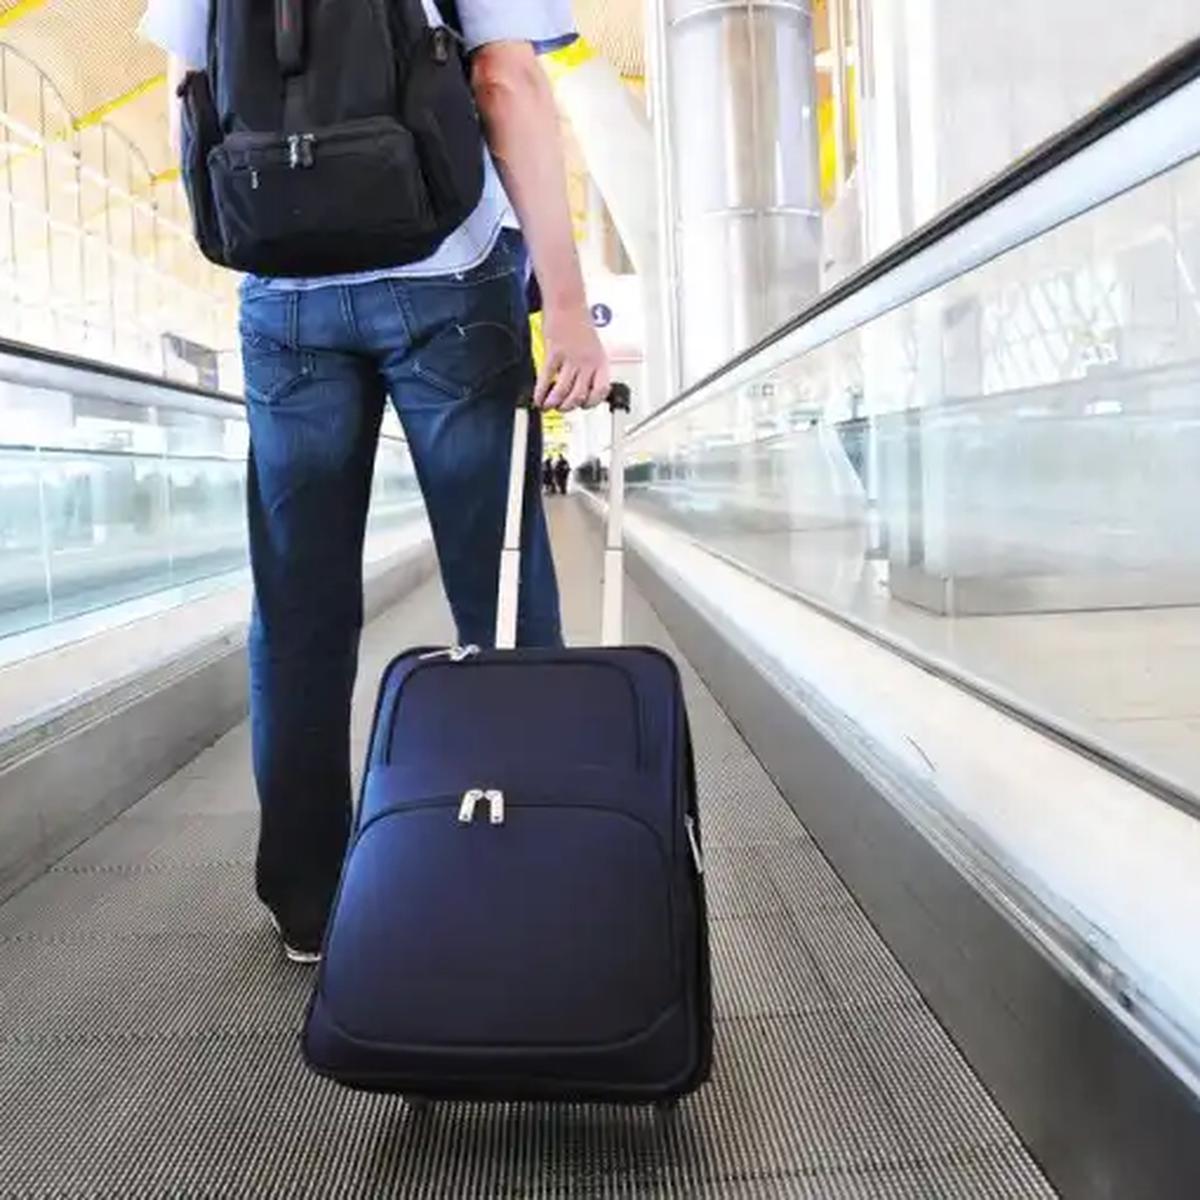 10 ítems que no puedes llevar en tu maleta de mano en el avión | viajar | |  VAMOS | EL COMERCIO PERÚ